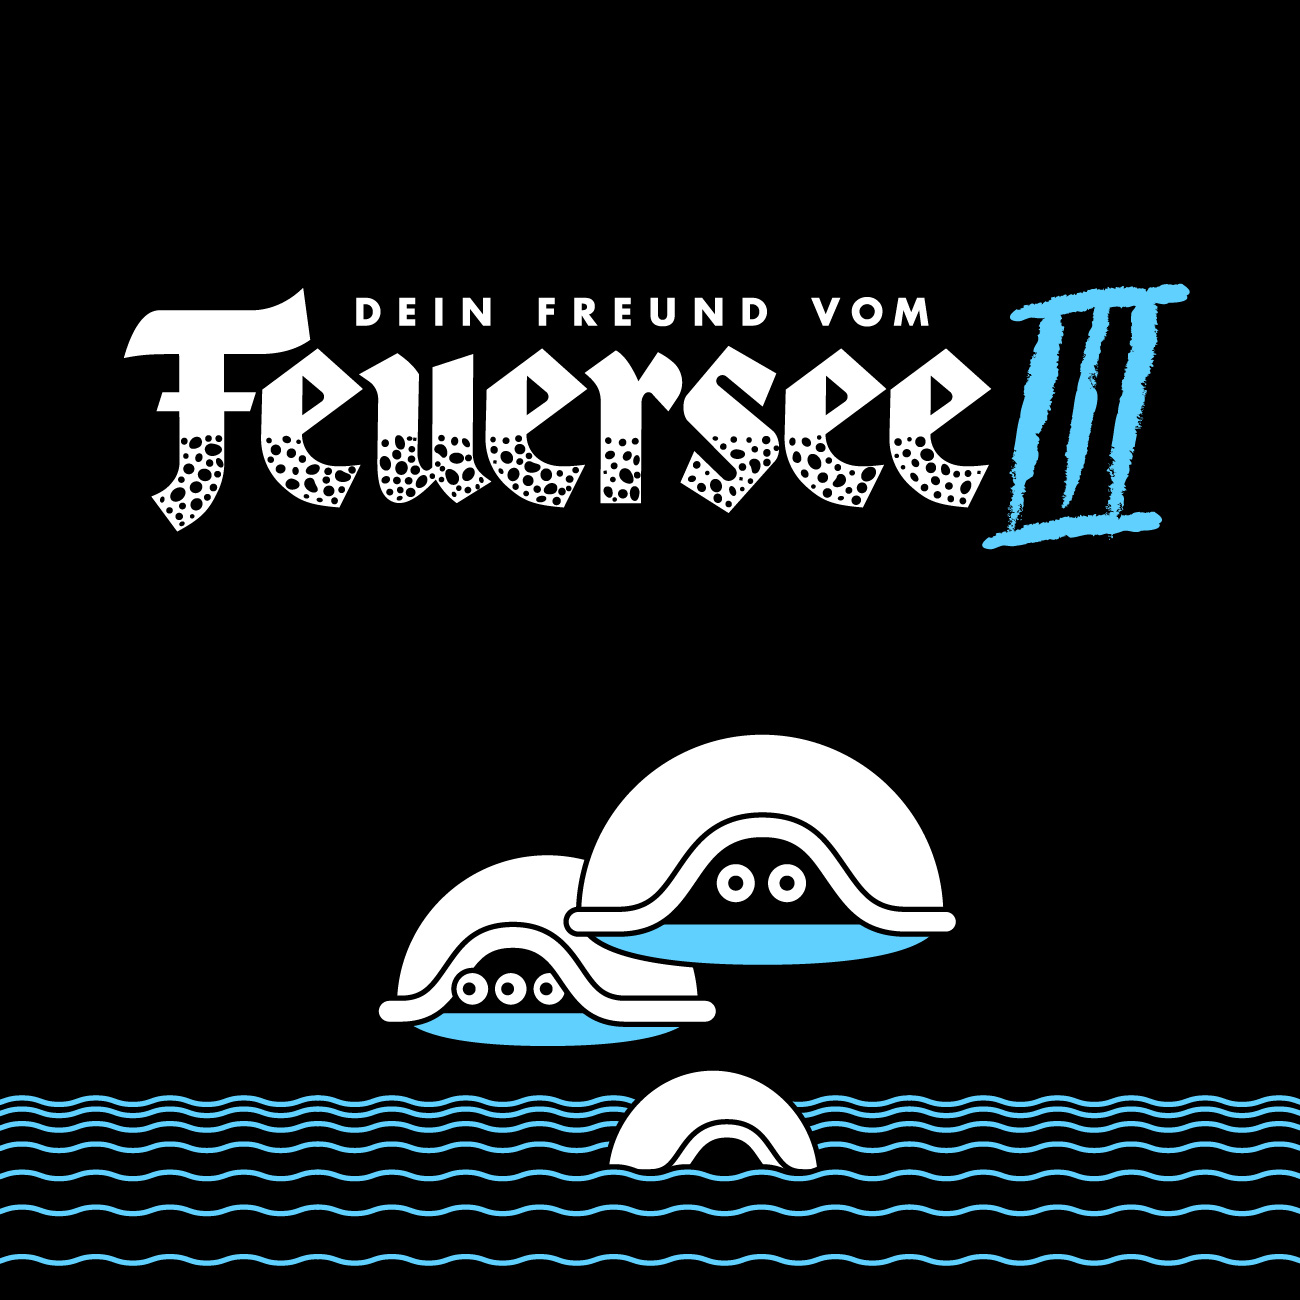 Dein Freund vom Feuersee cover design with turtles by Axel Pfaender